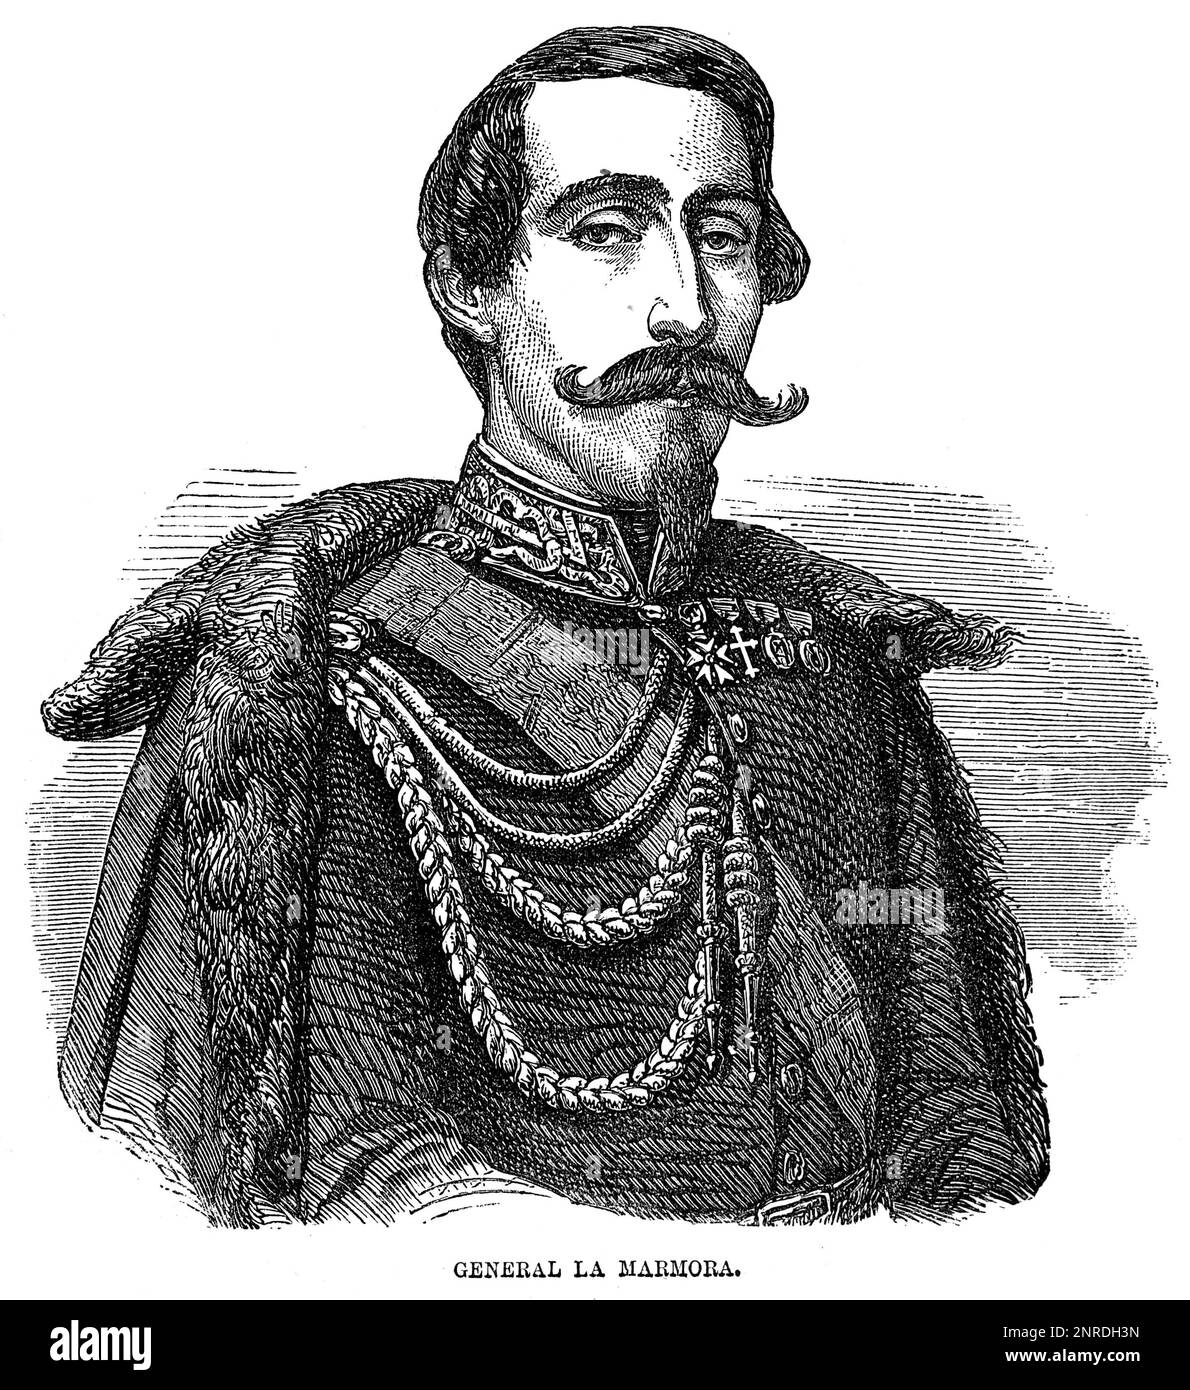 Porträt von General Alfonso Ferrero La Marmora (1804-1878), italienischem General und Staatsmann. Schwarzweiß-Illustration Stockfoto